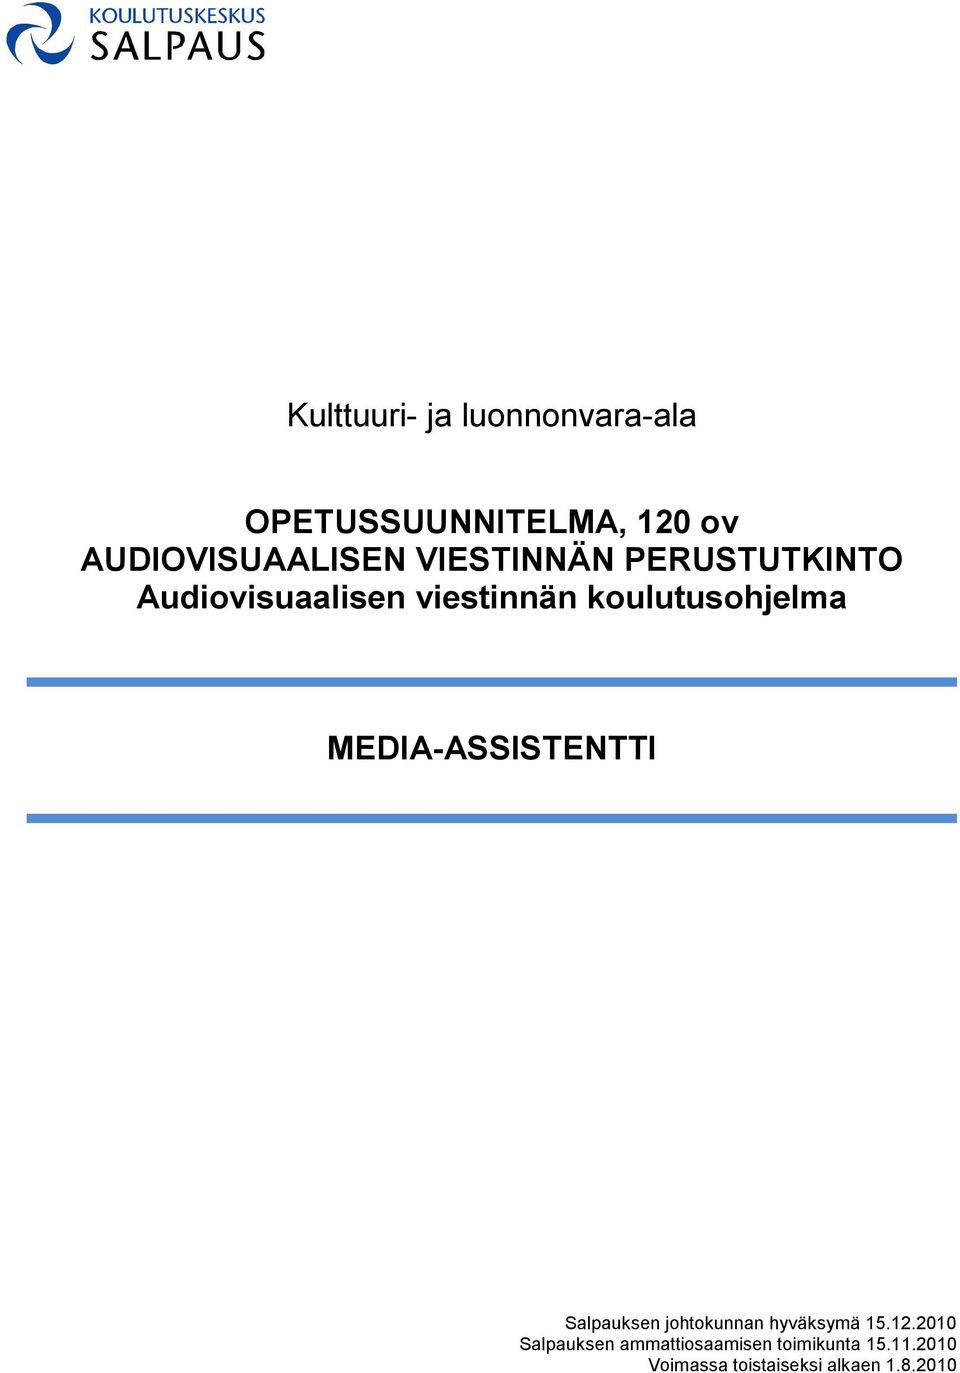 MEDIA-ASSISTENTTI Salpauksen johtokunnan hyväksymä 15.12.